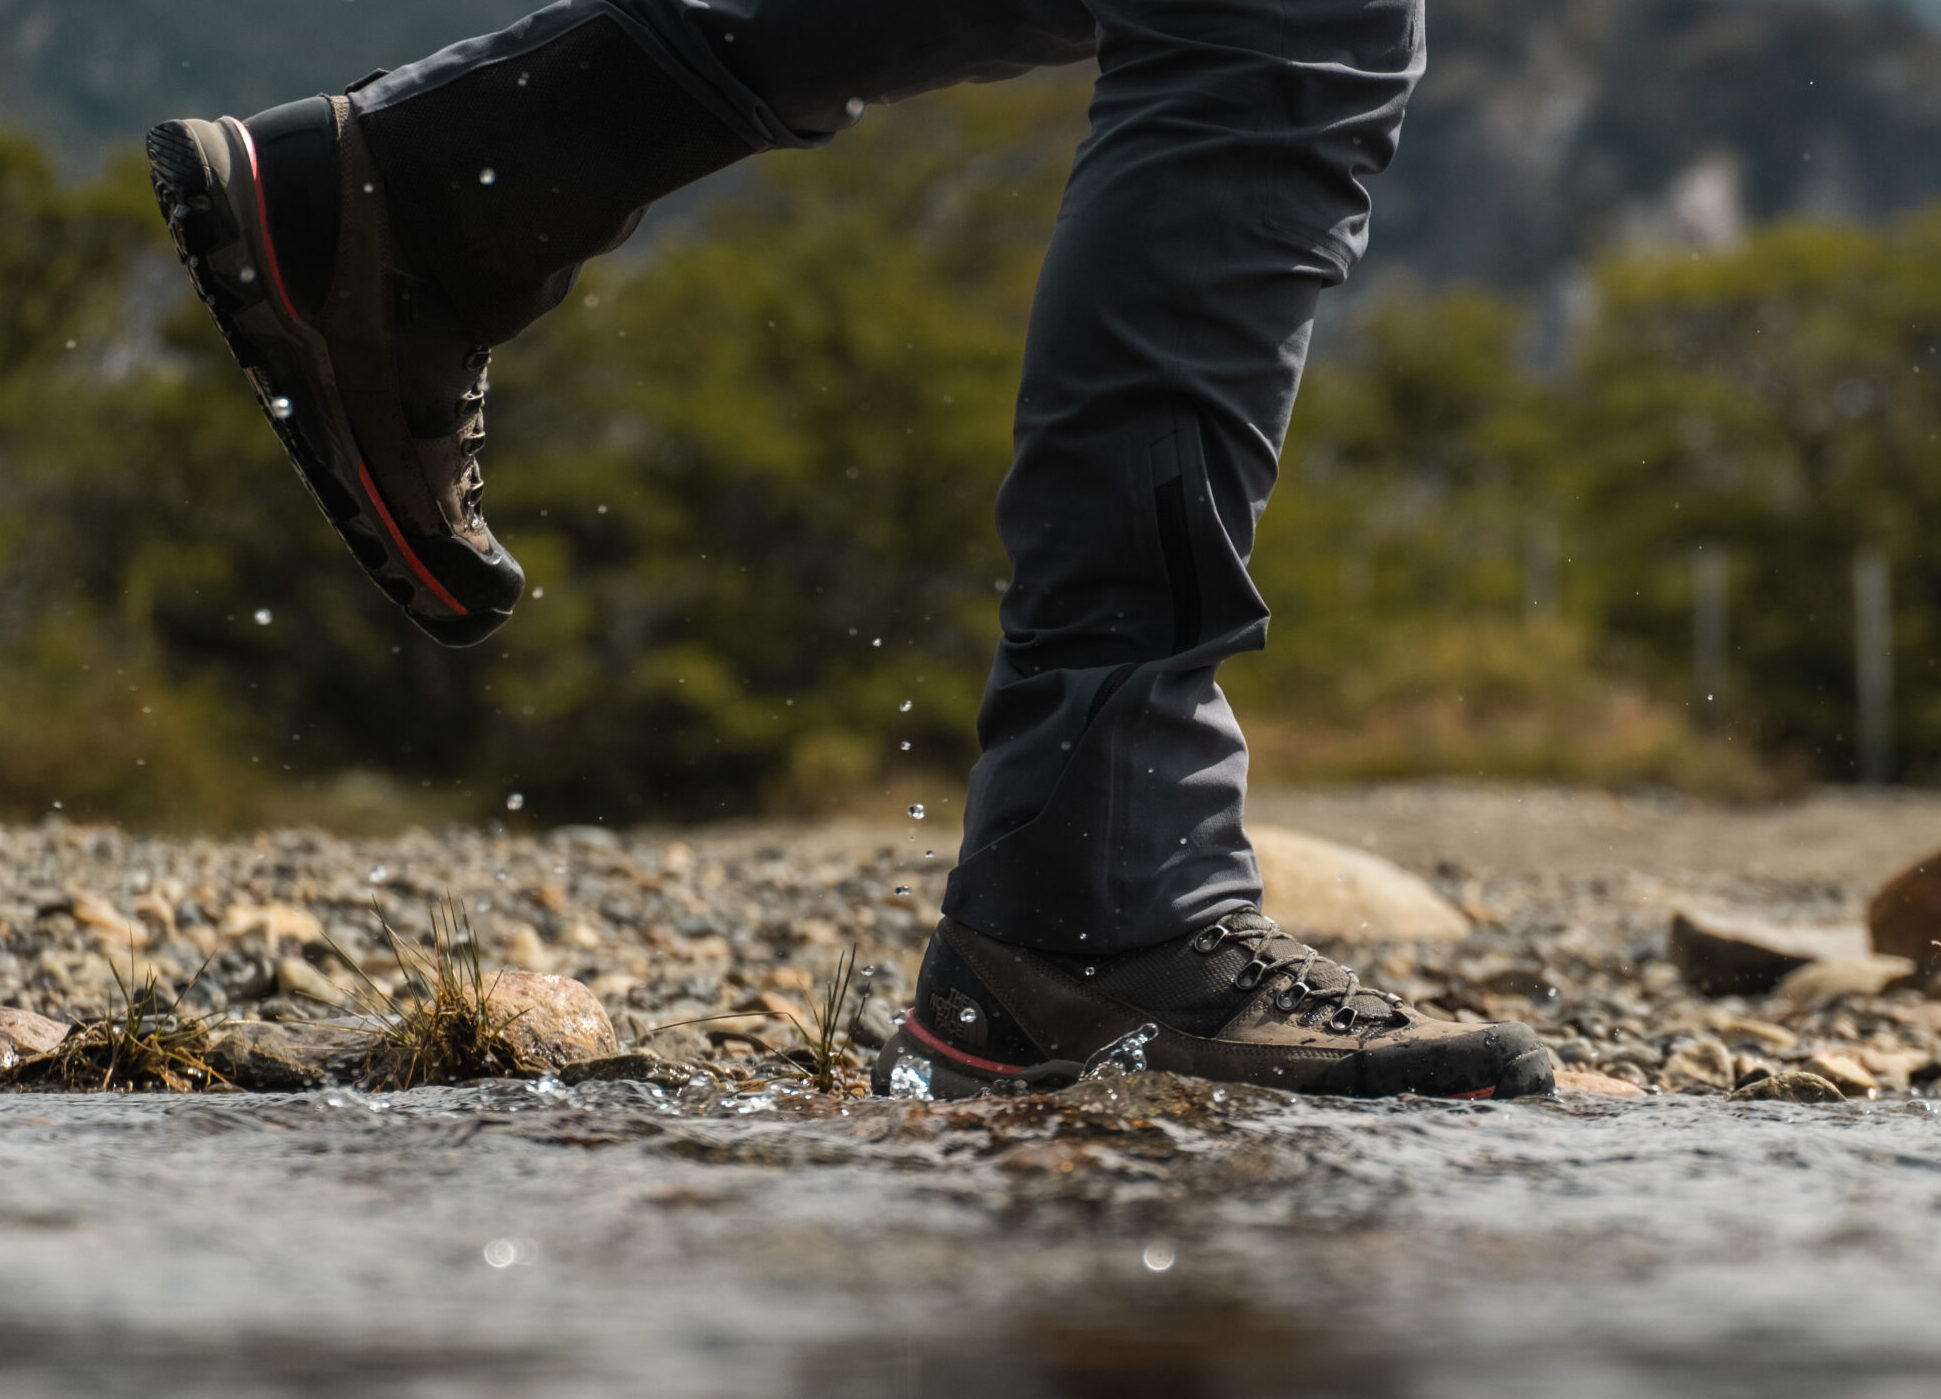 Botas ou tênis? Qual o melhor calçado para usar em trilhas?